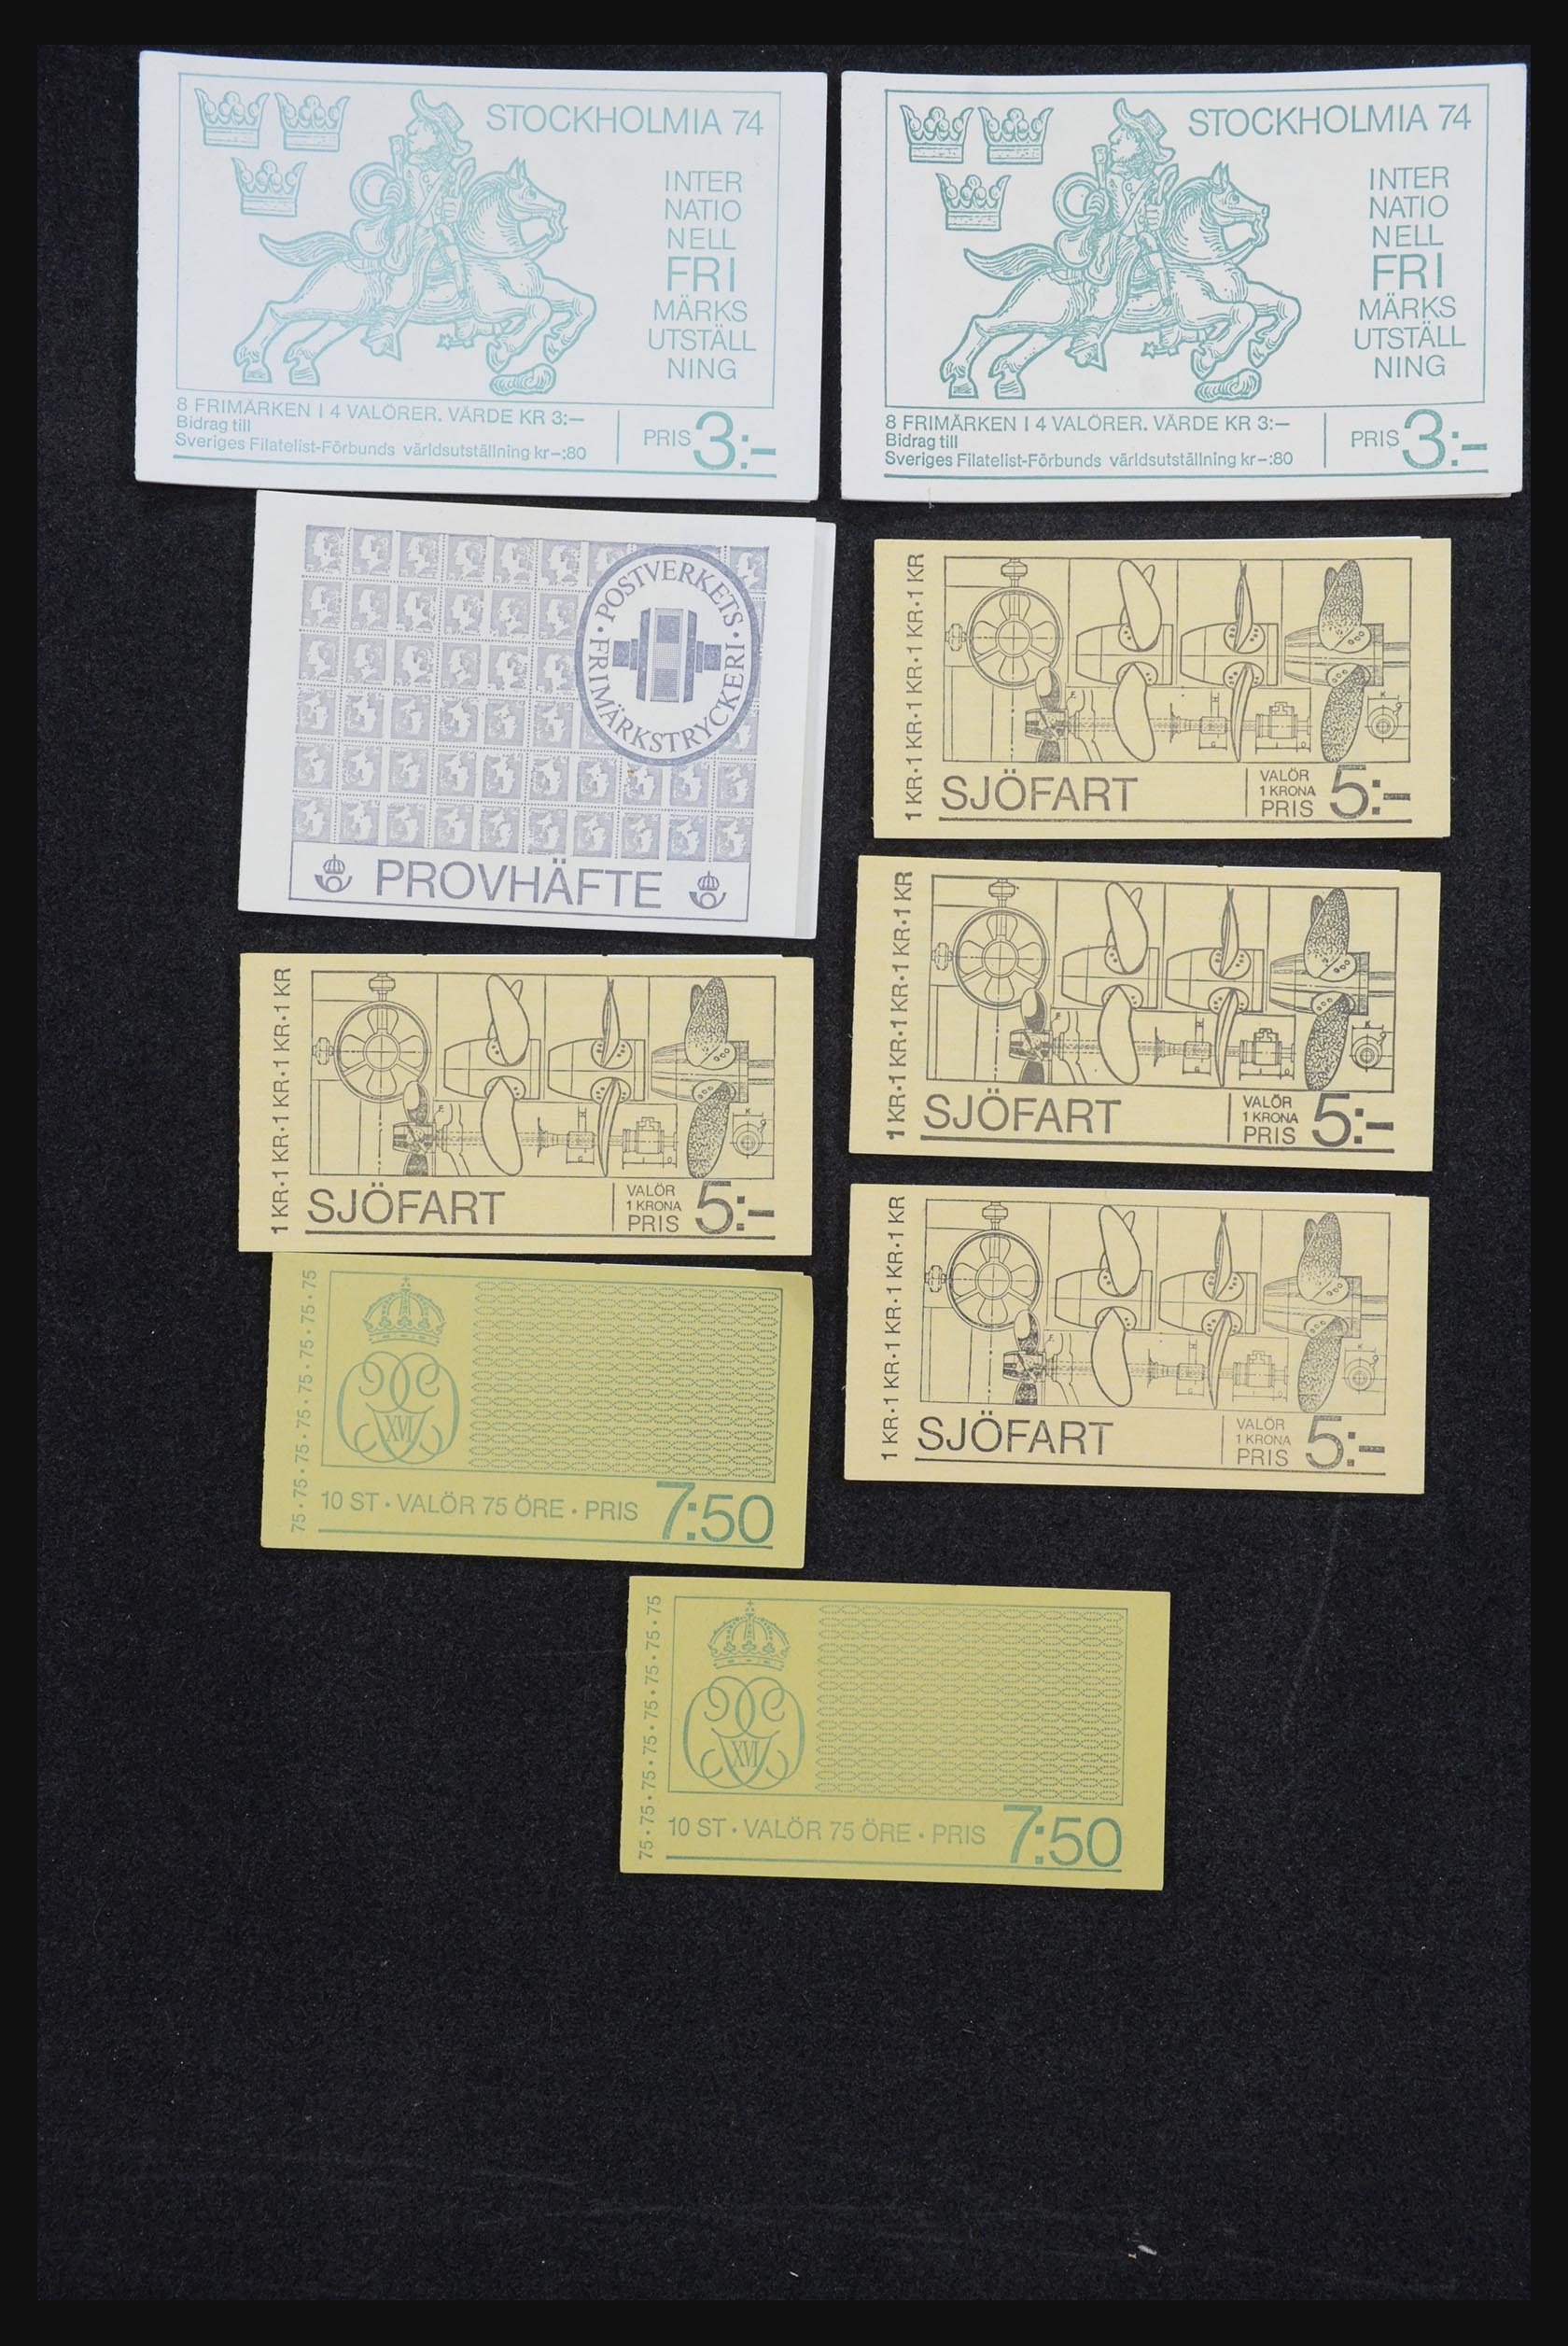 32026 023 - 32026 Sweden stampbooklets 1949-1990.